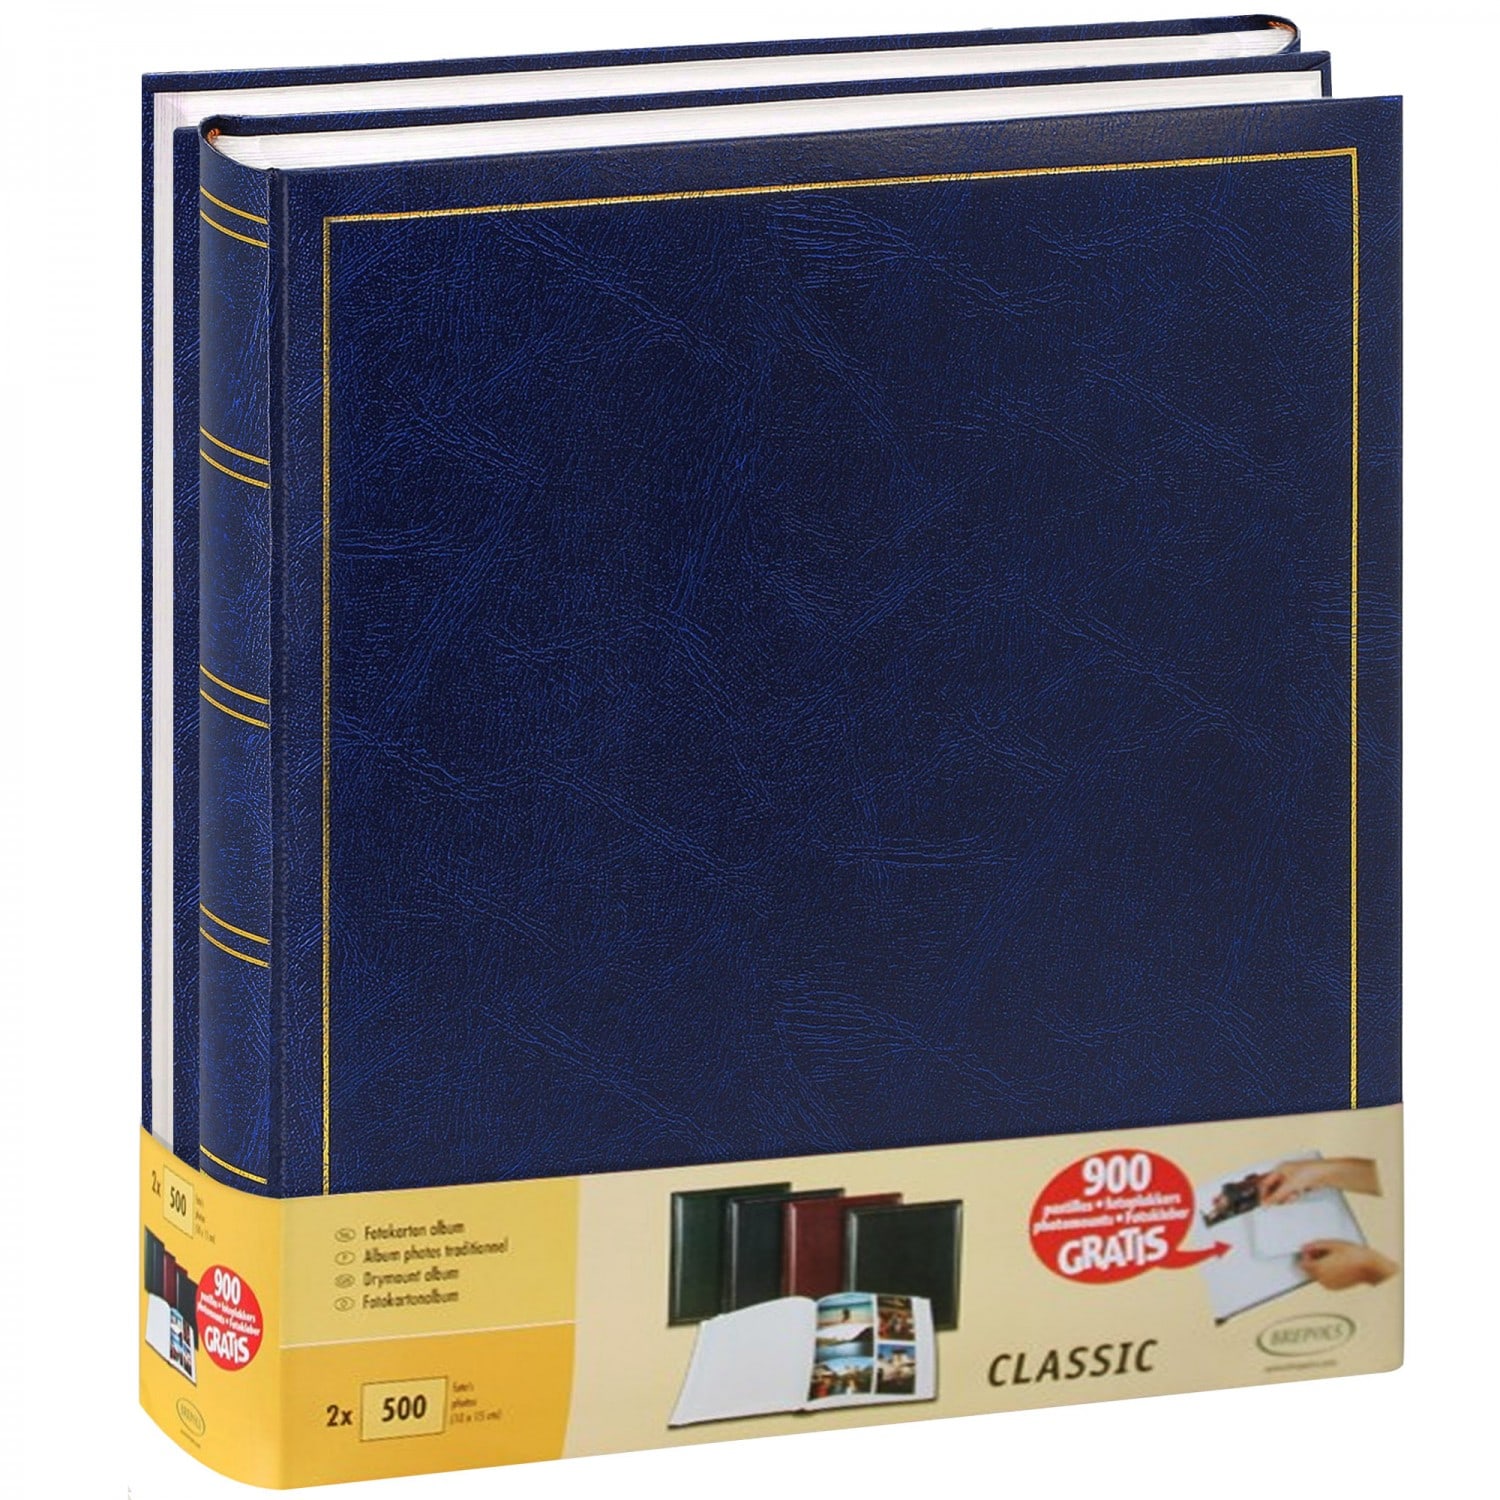 50 Page Feuille 900 Pochette Carte Classeur Album Collection